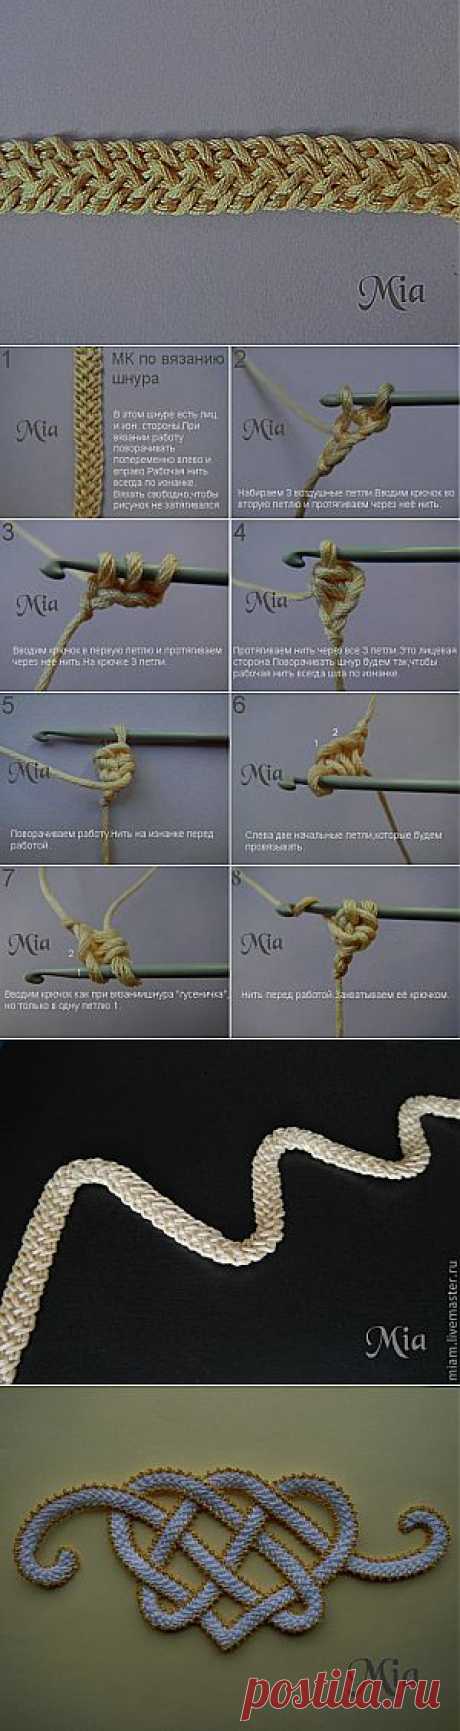 Мастер-класс по вязанию шнура - Ярмарка Мастеров - ручная работа, handmade